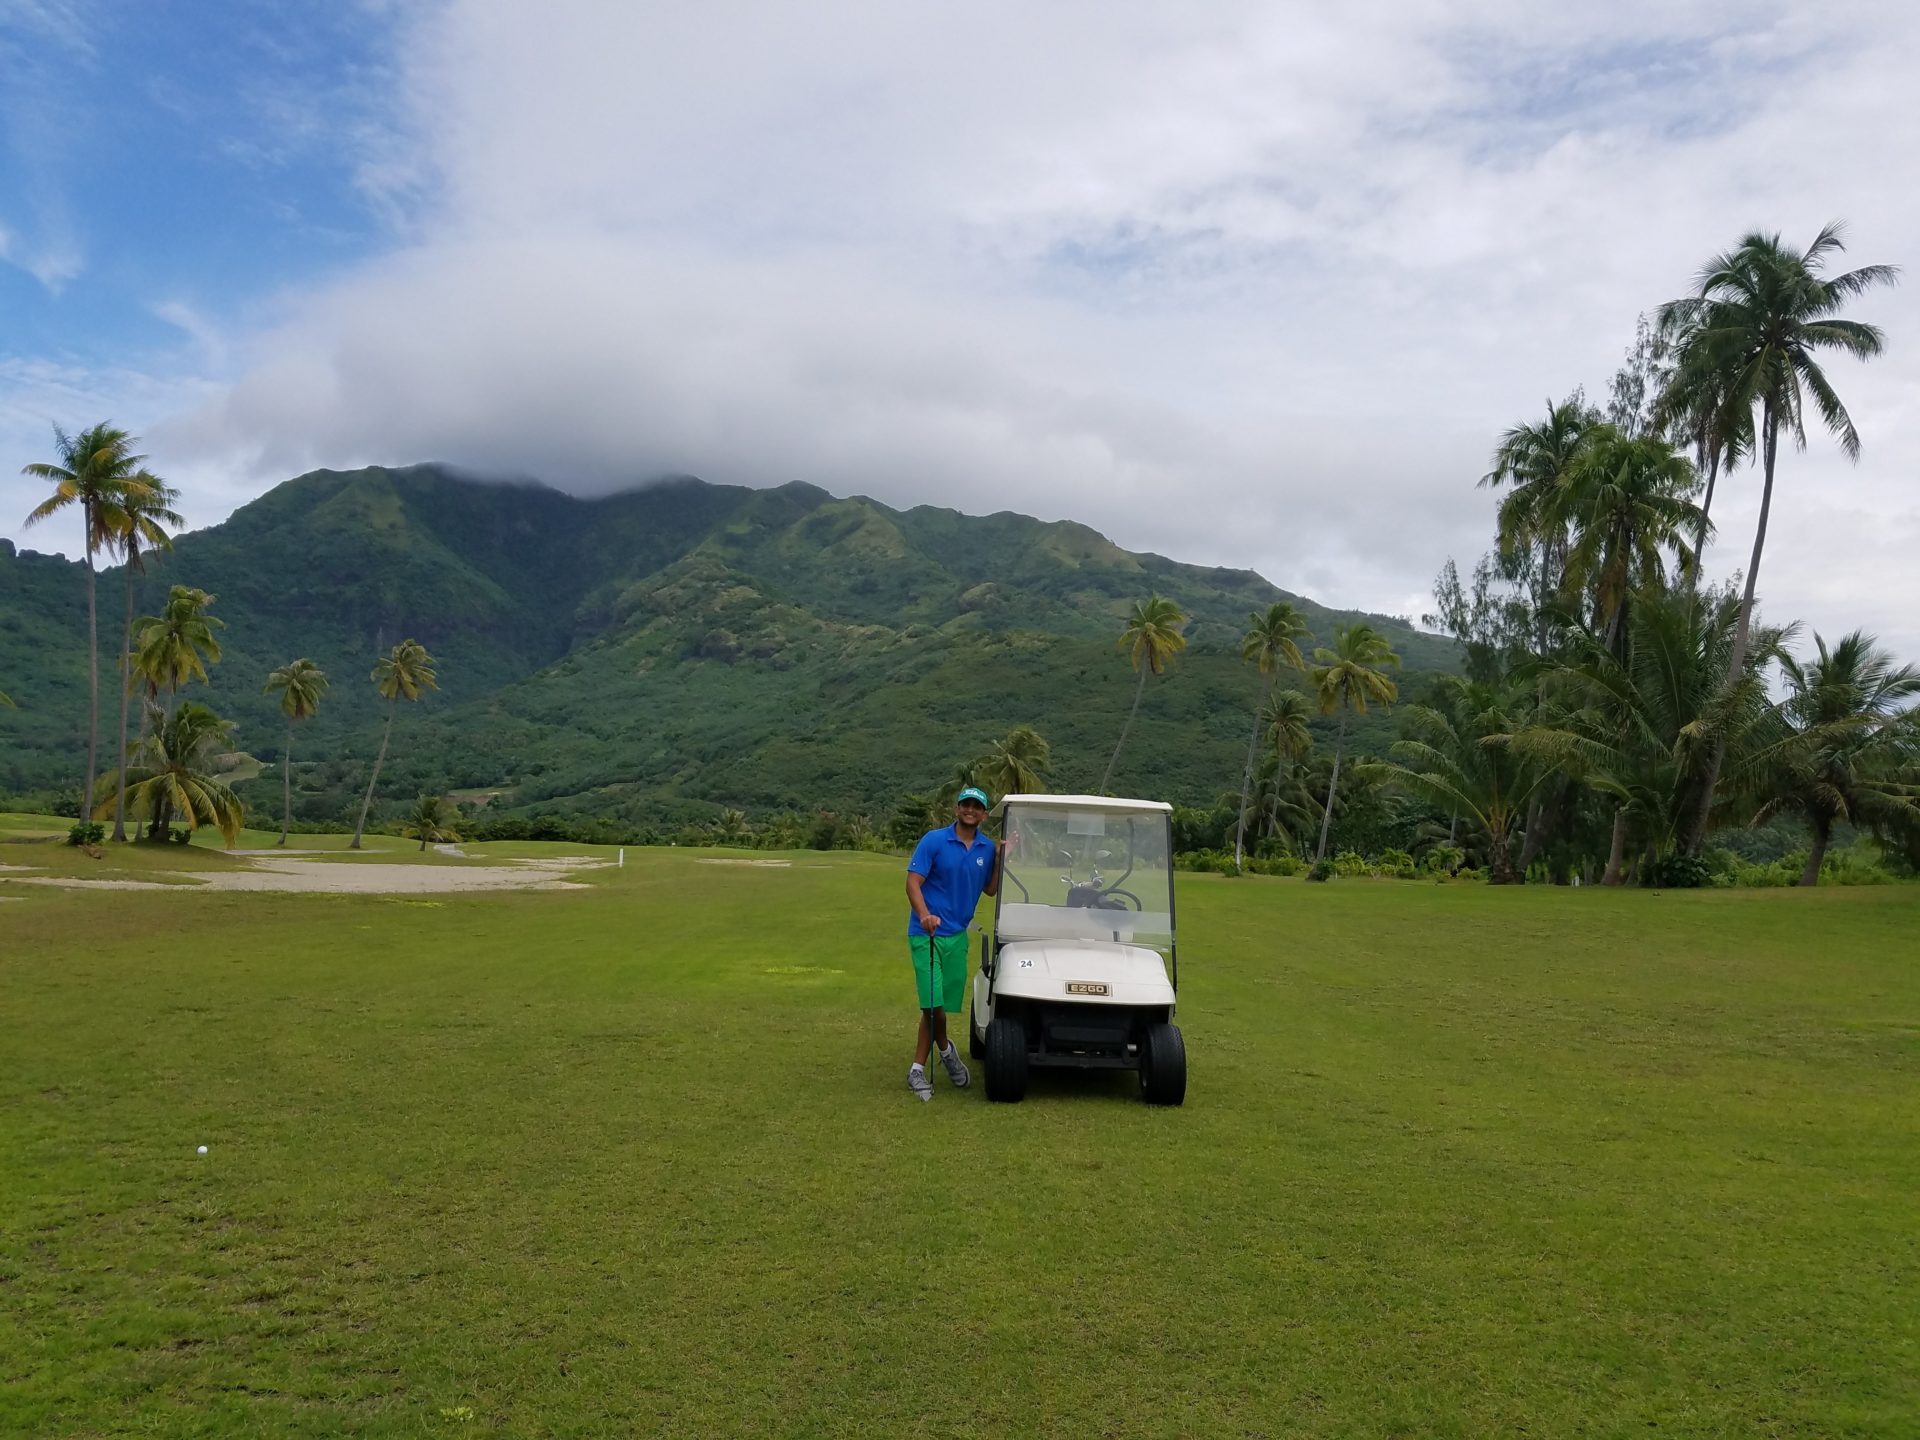 a man standing next to a golf cart